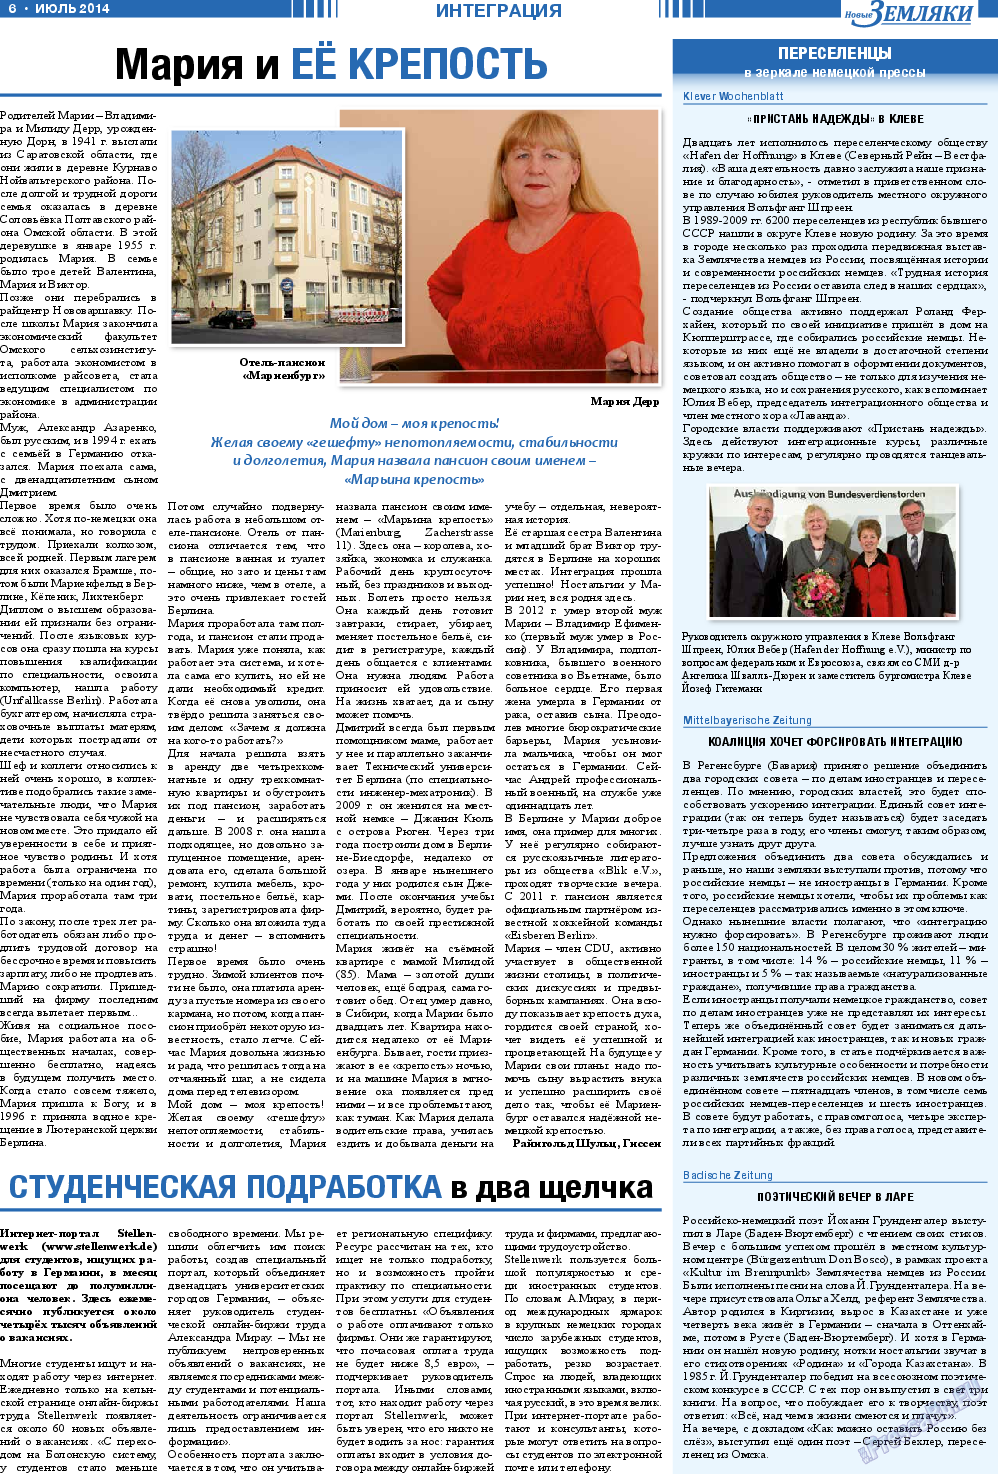 Новые Земляки, газета. 2014 №7 стр.6